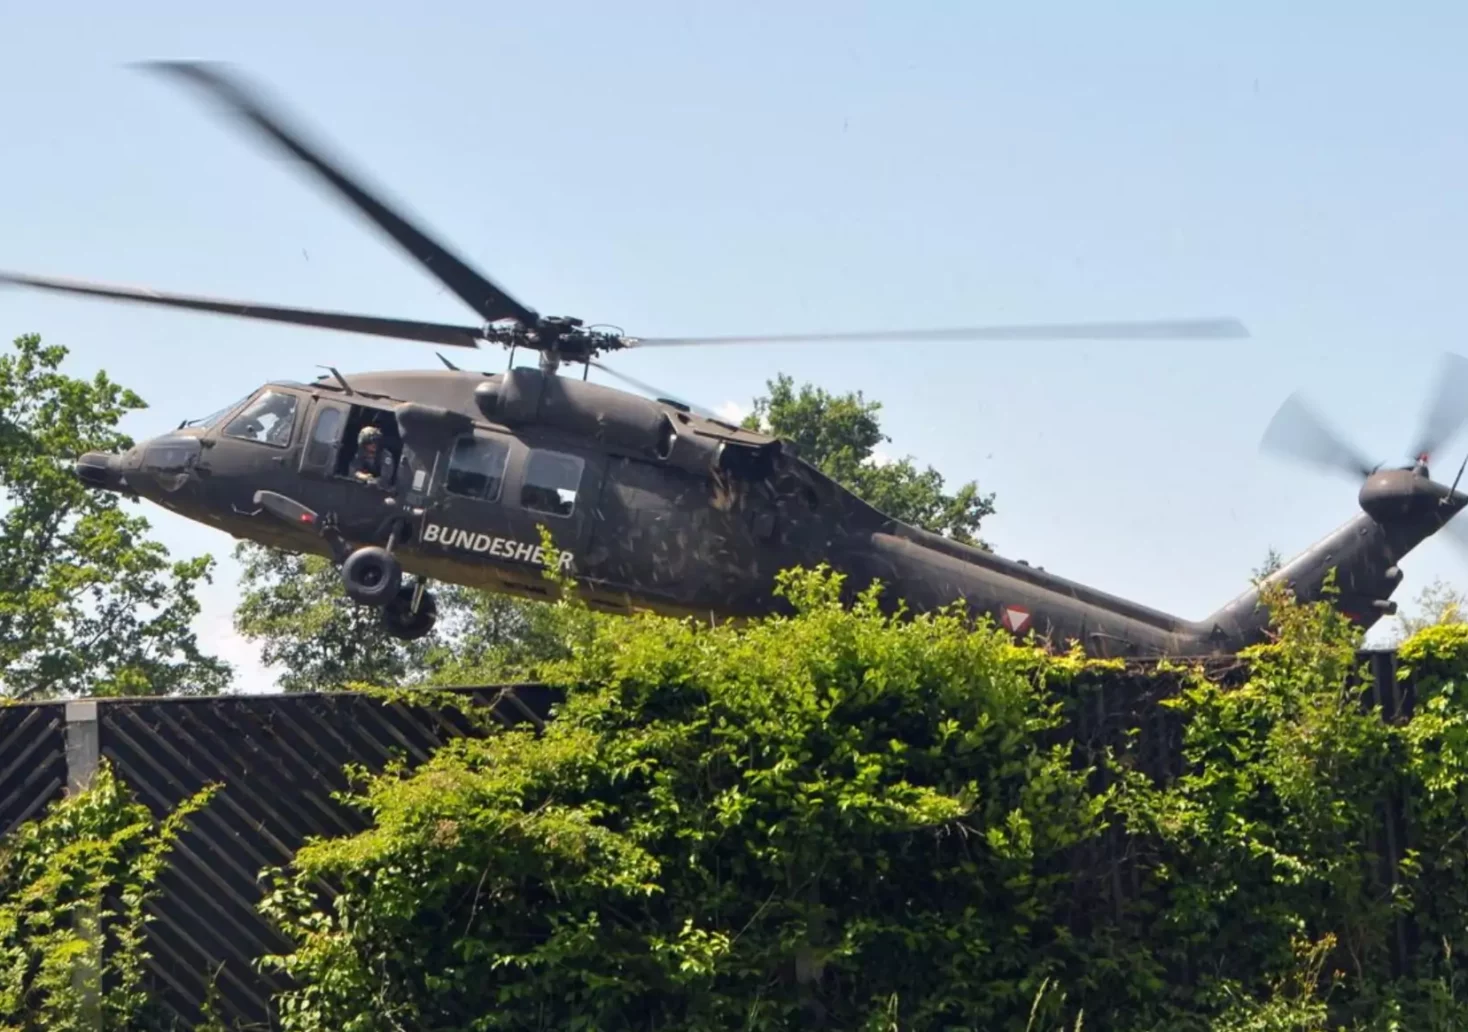 Ein Symbolfoto auf 5min.at zeigt einen Bundesheer Hubschrauber bei der Landung.